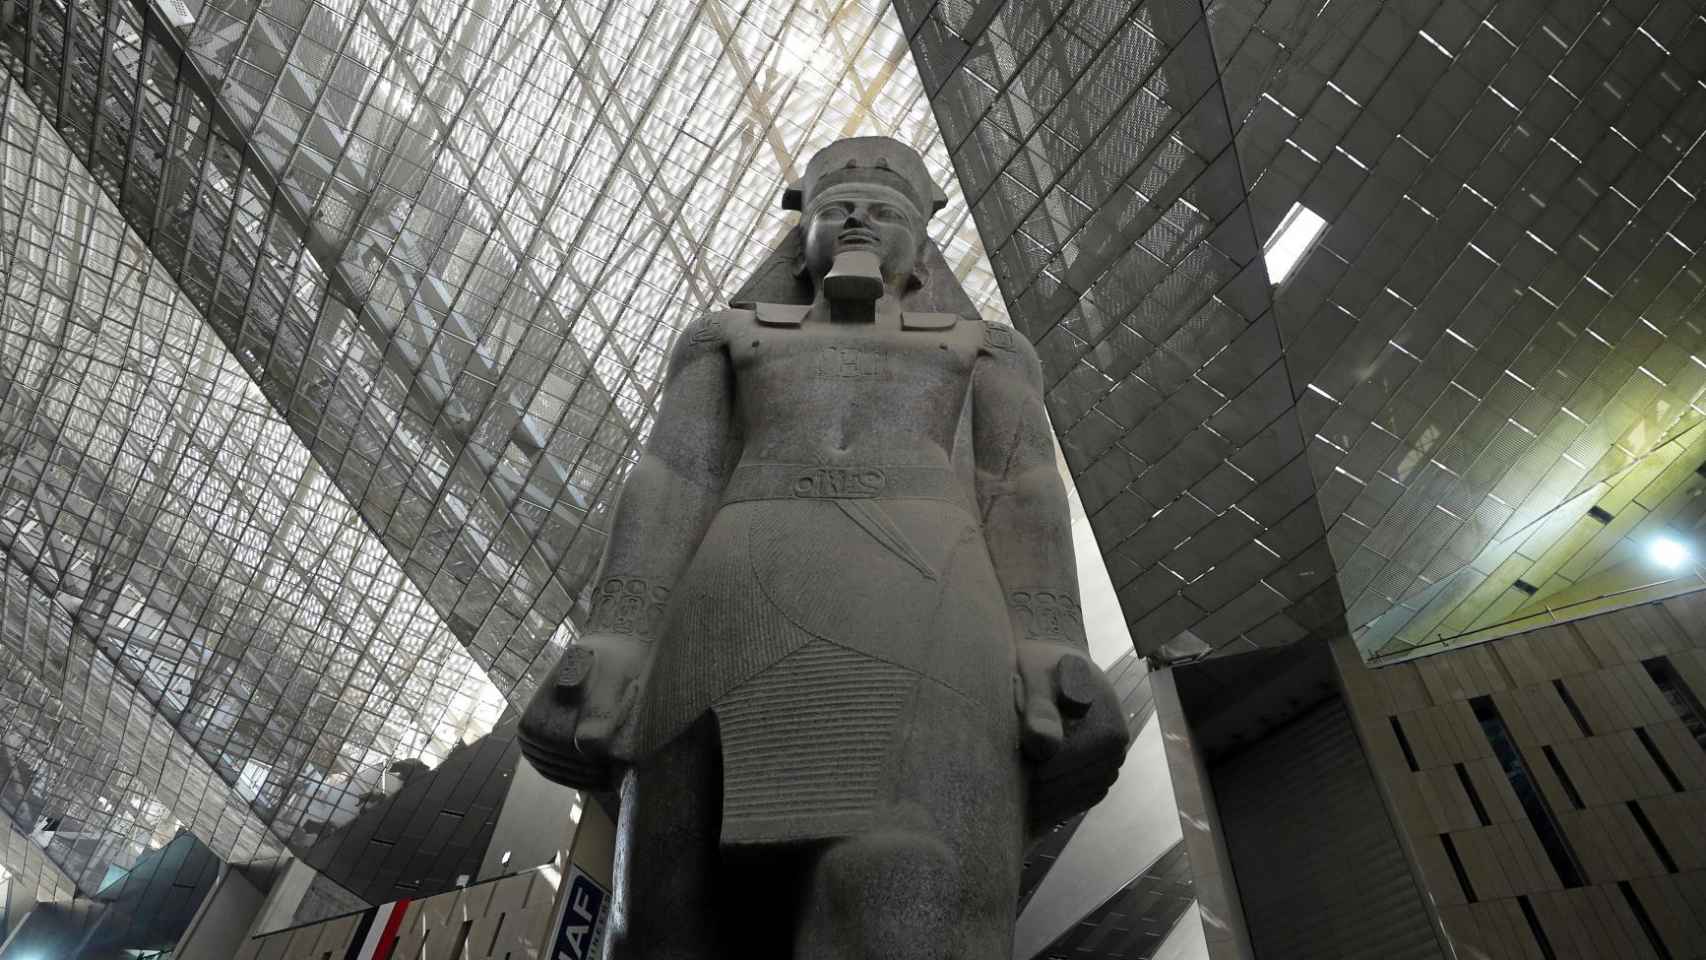 Los tesoros inéditos de Tutankamón y otros 100.000 objetos: así será el Gran Museo Egipcio Antiguo_Egipto-Historia-Museos-Tutankamon-Turismo-Historia_466467291_144871902_1706x960